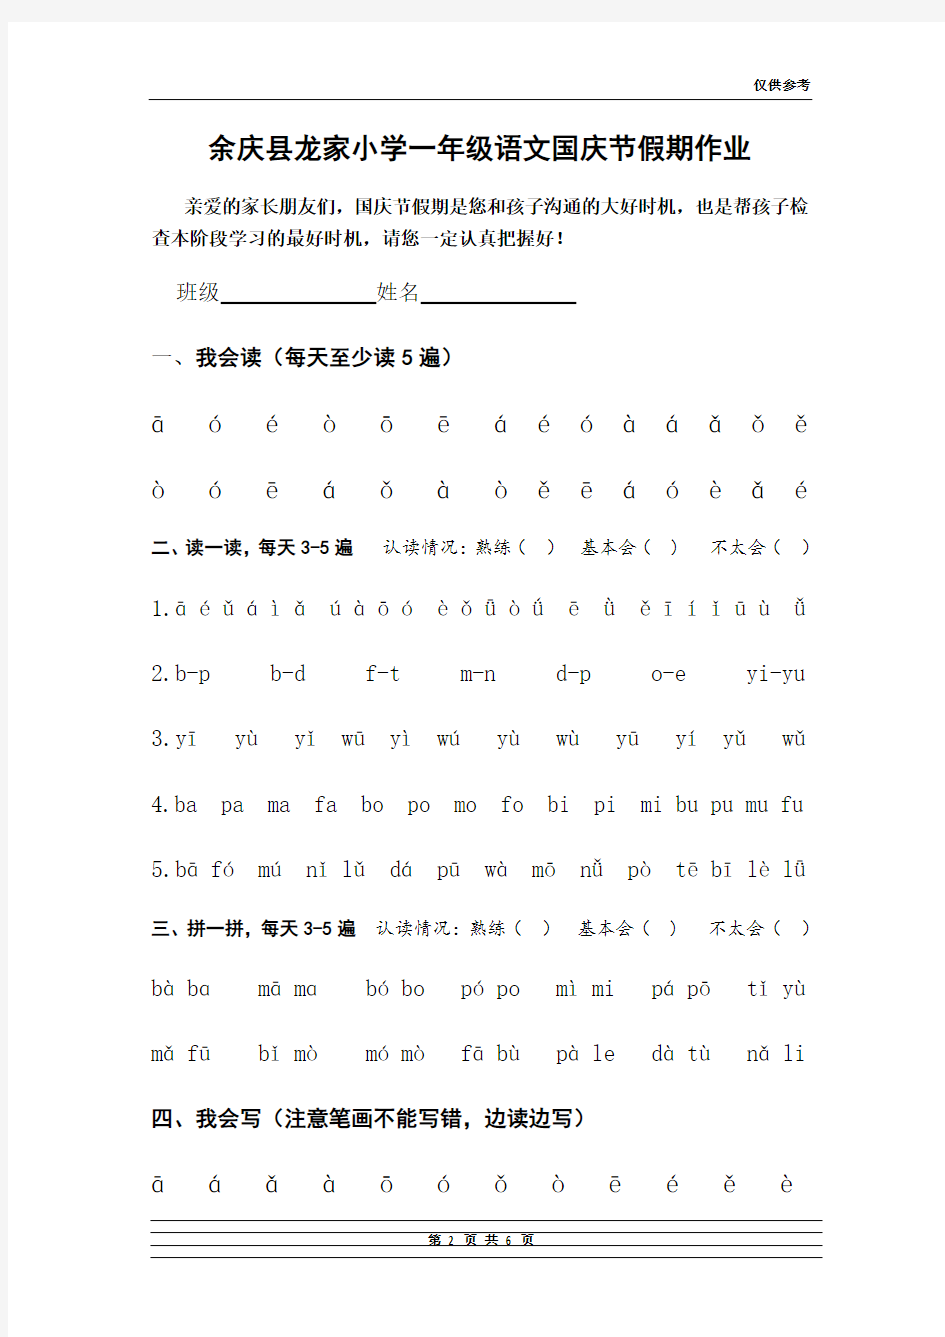 一年级上册语文拼音国庆节作业安排